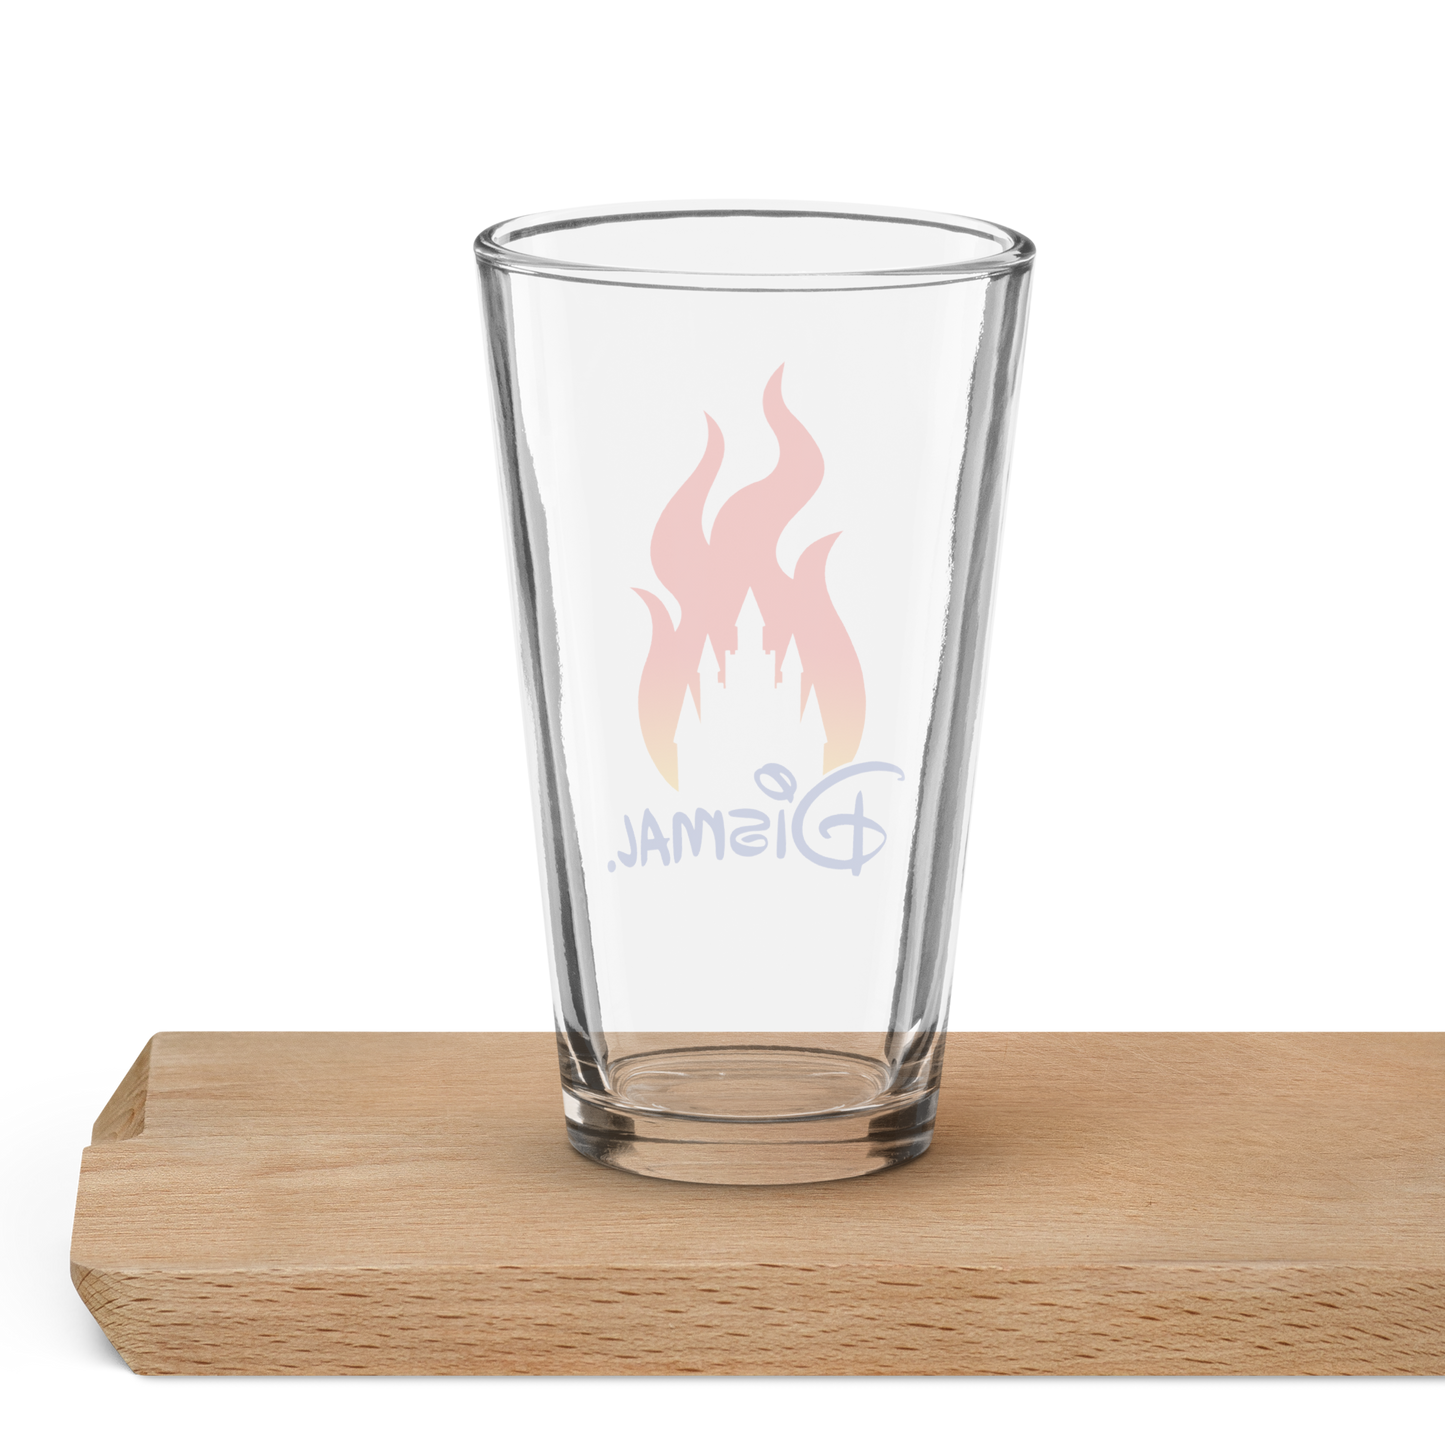 'Dismal' Kingdom Parody Shaker Pint Glass